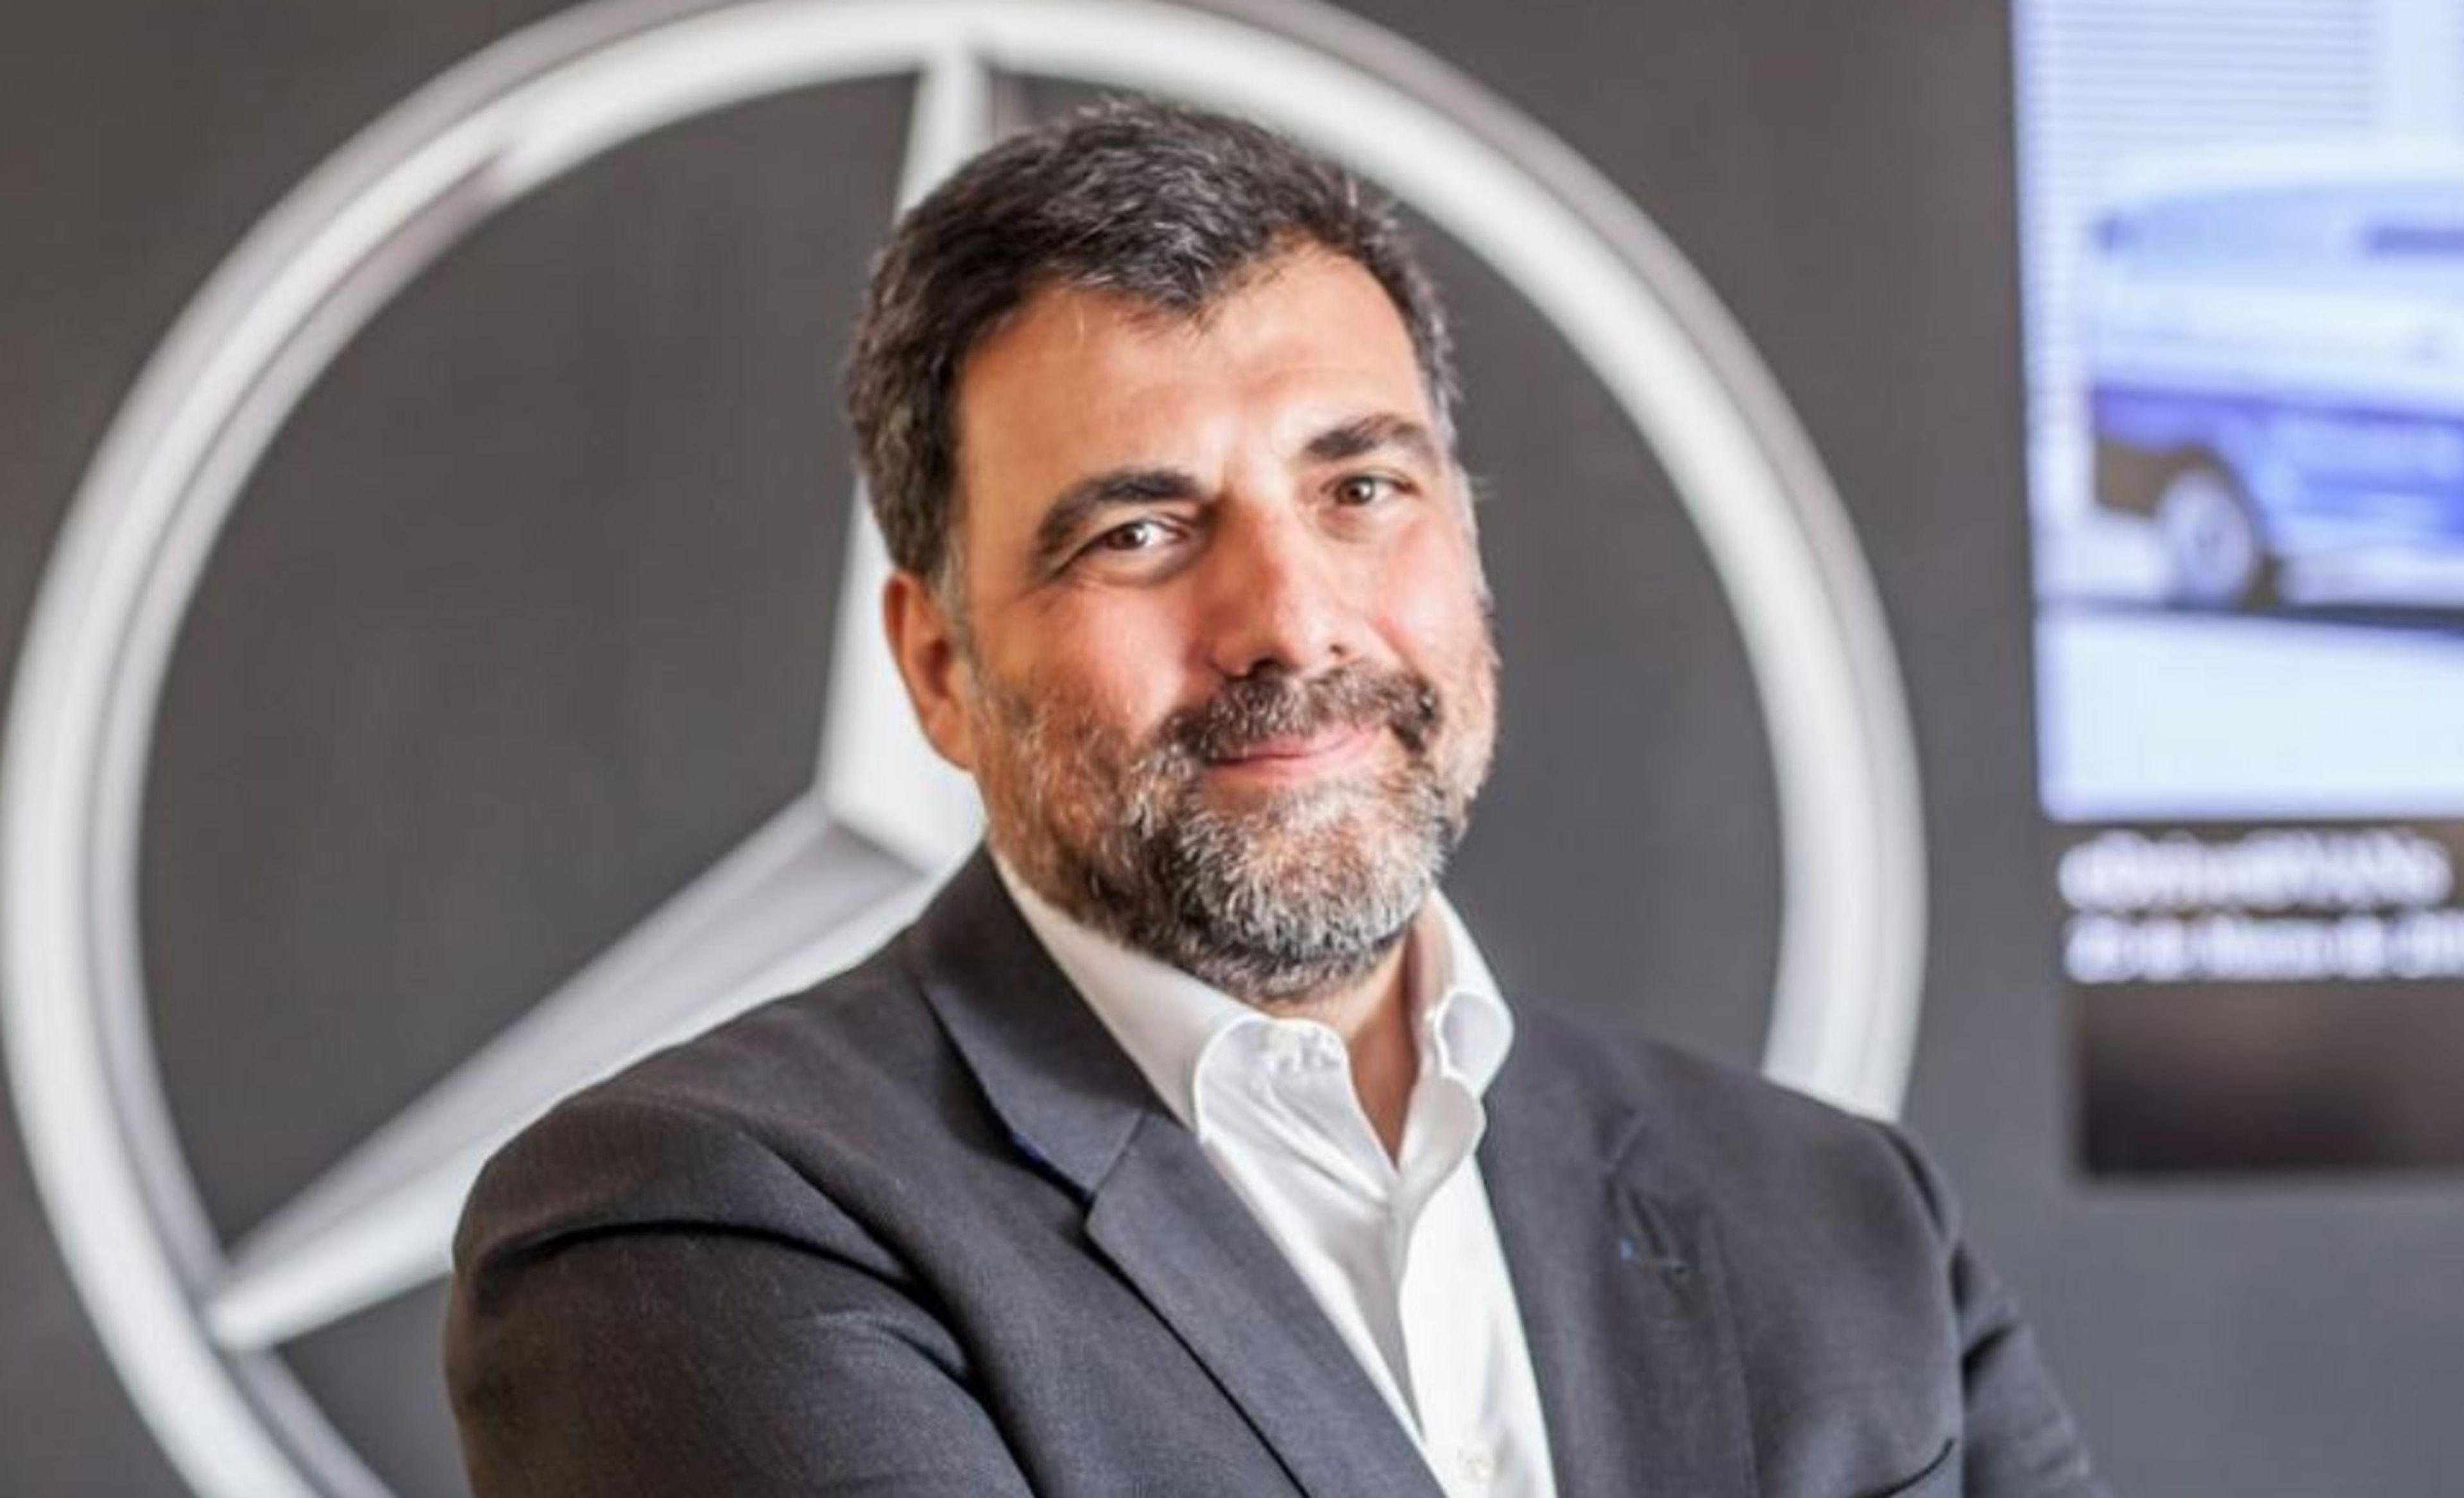 Andrés Orejón, managing director Mercedes-Benz Vans España